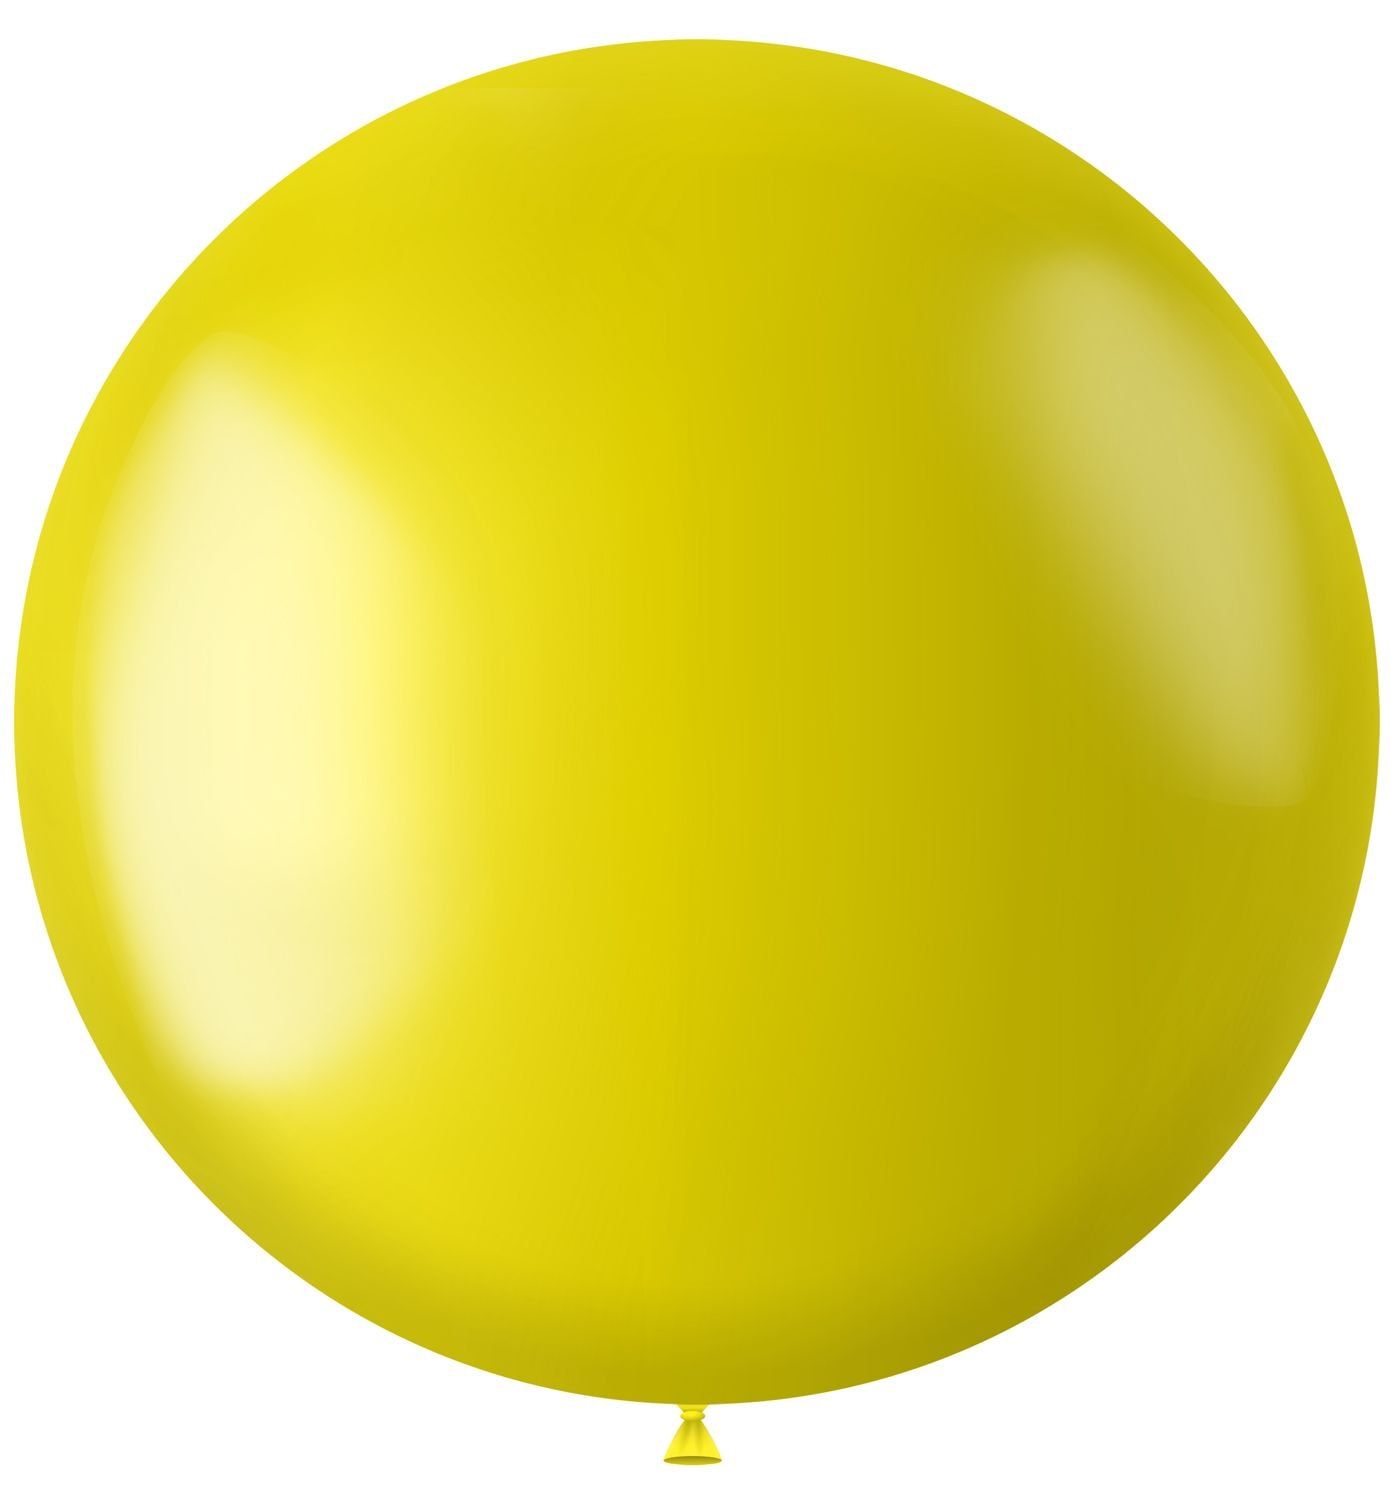 XL ballon geel metallic